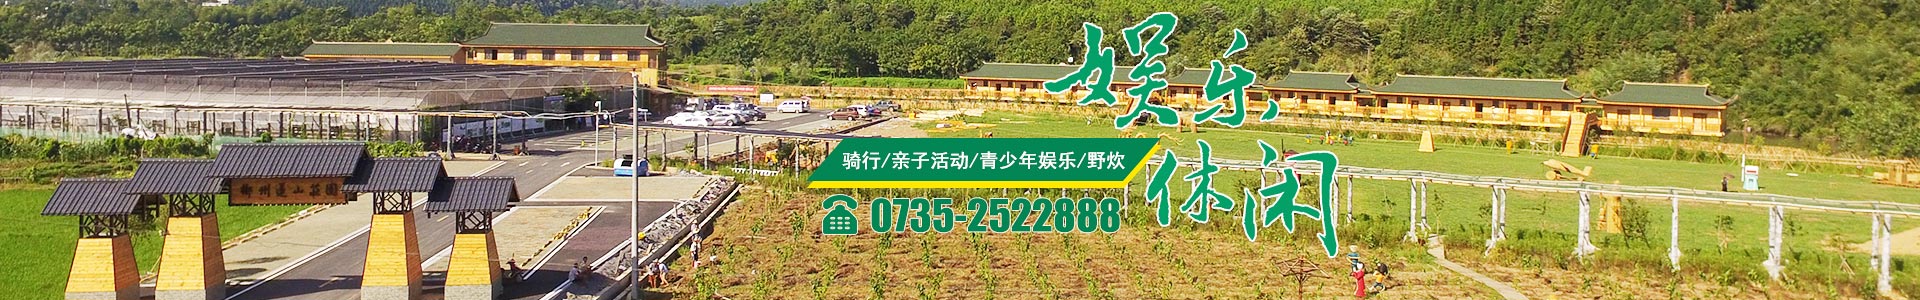 郴州華漢棲河生態農業有限公司|湖南生態山莊|郴州生態山莊